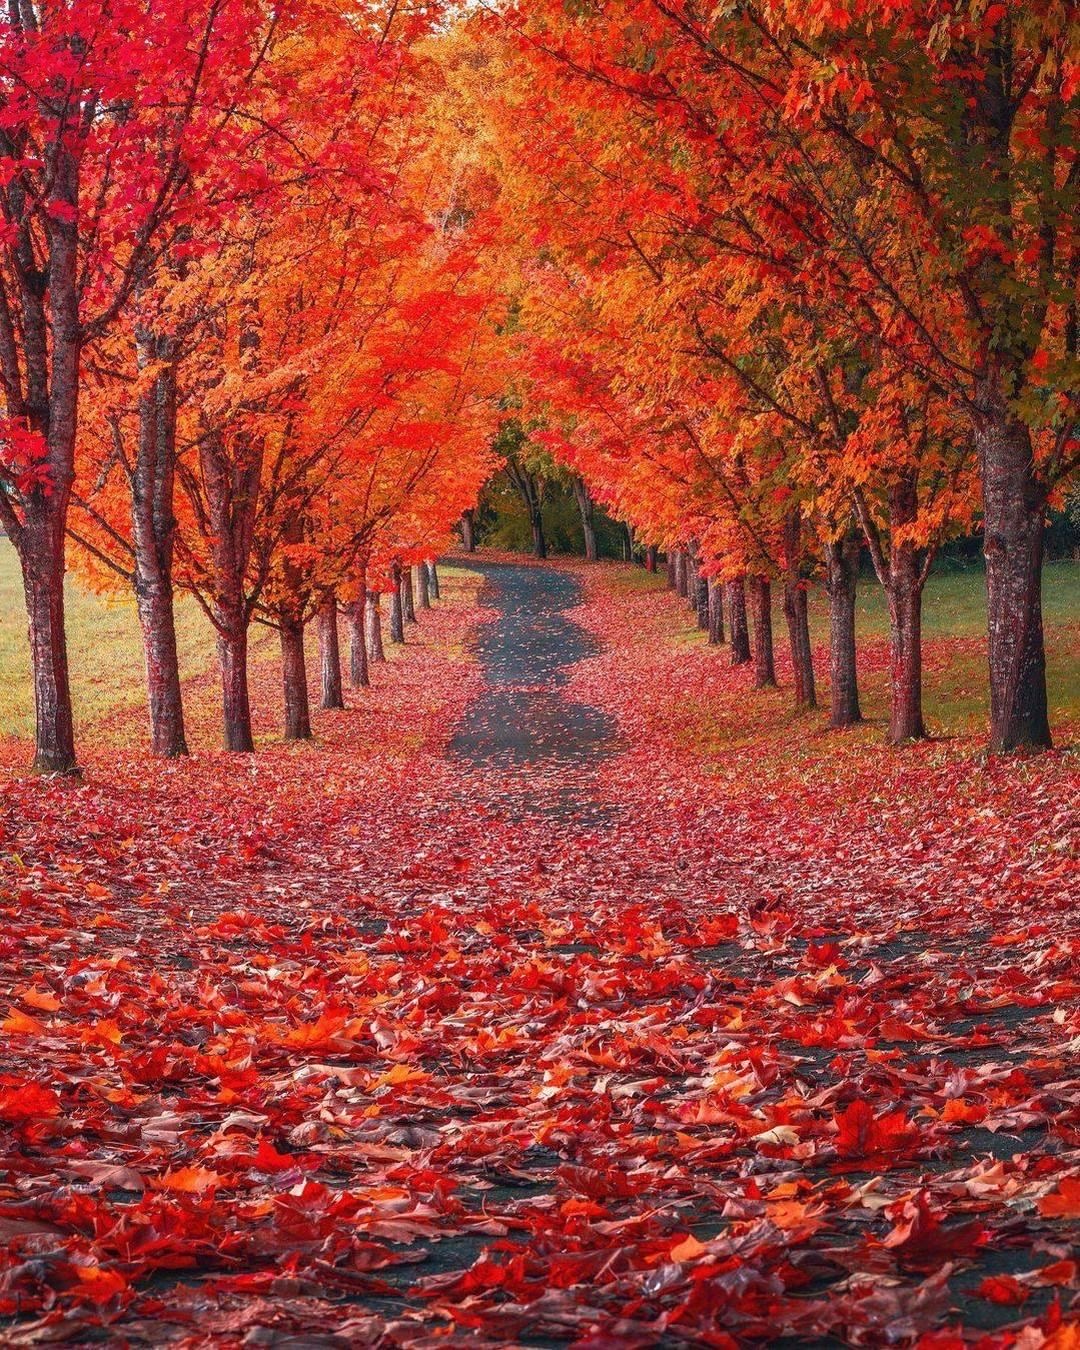 l’asfalto coperto dalle foglie rosse che cadono dagli alberi